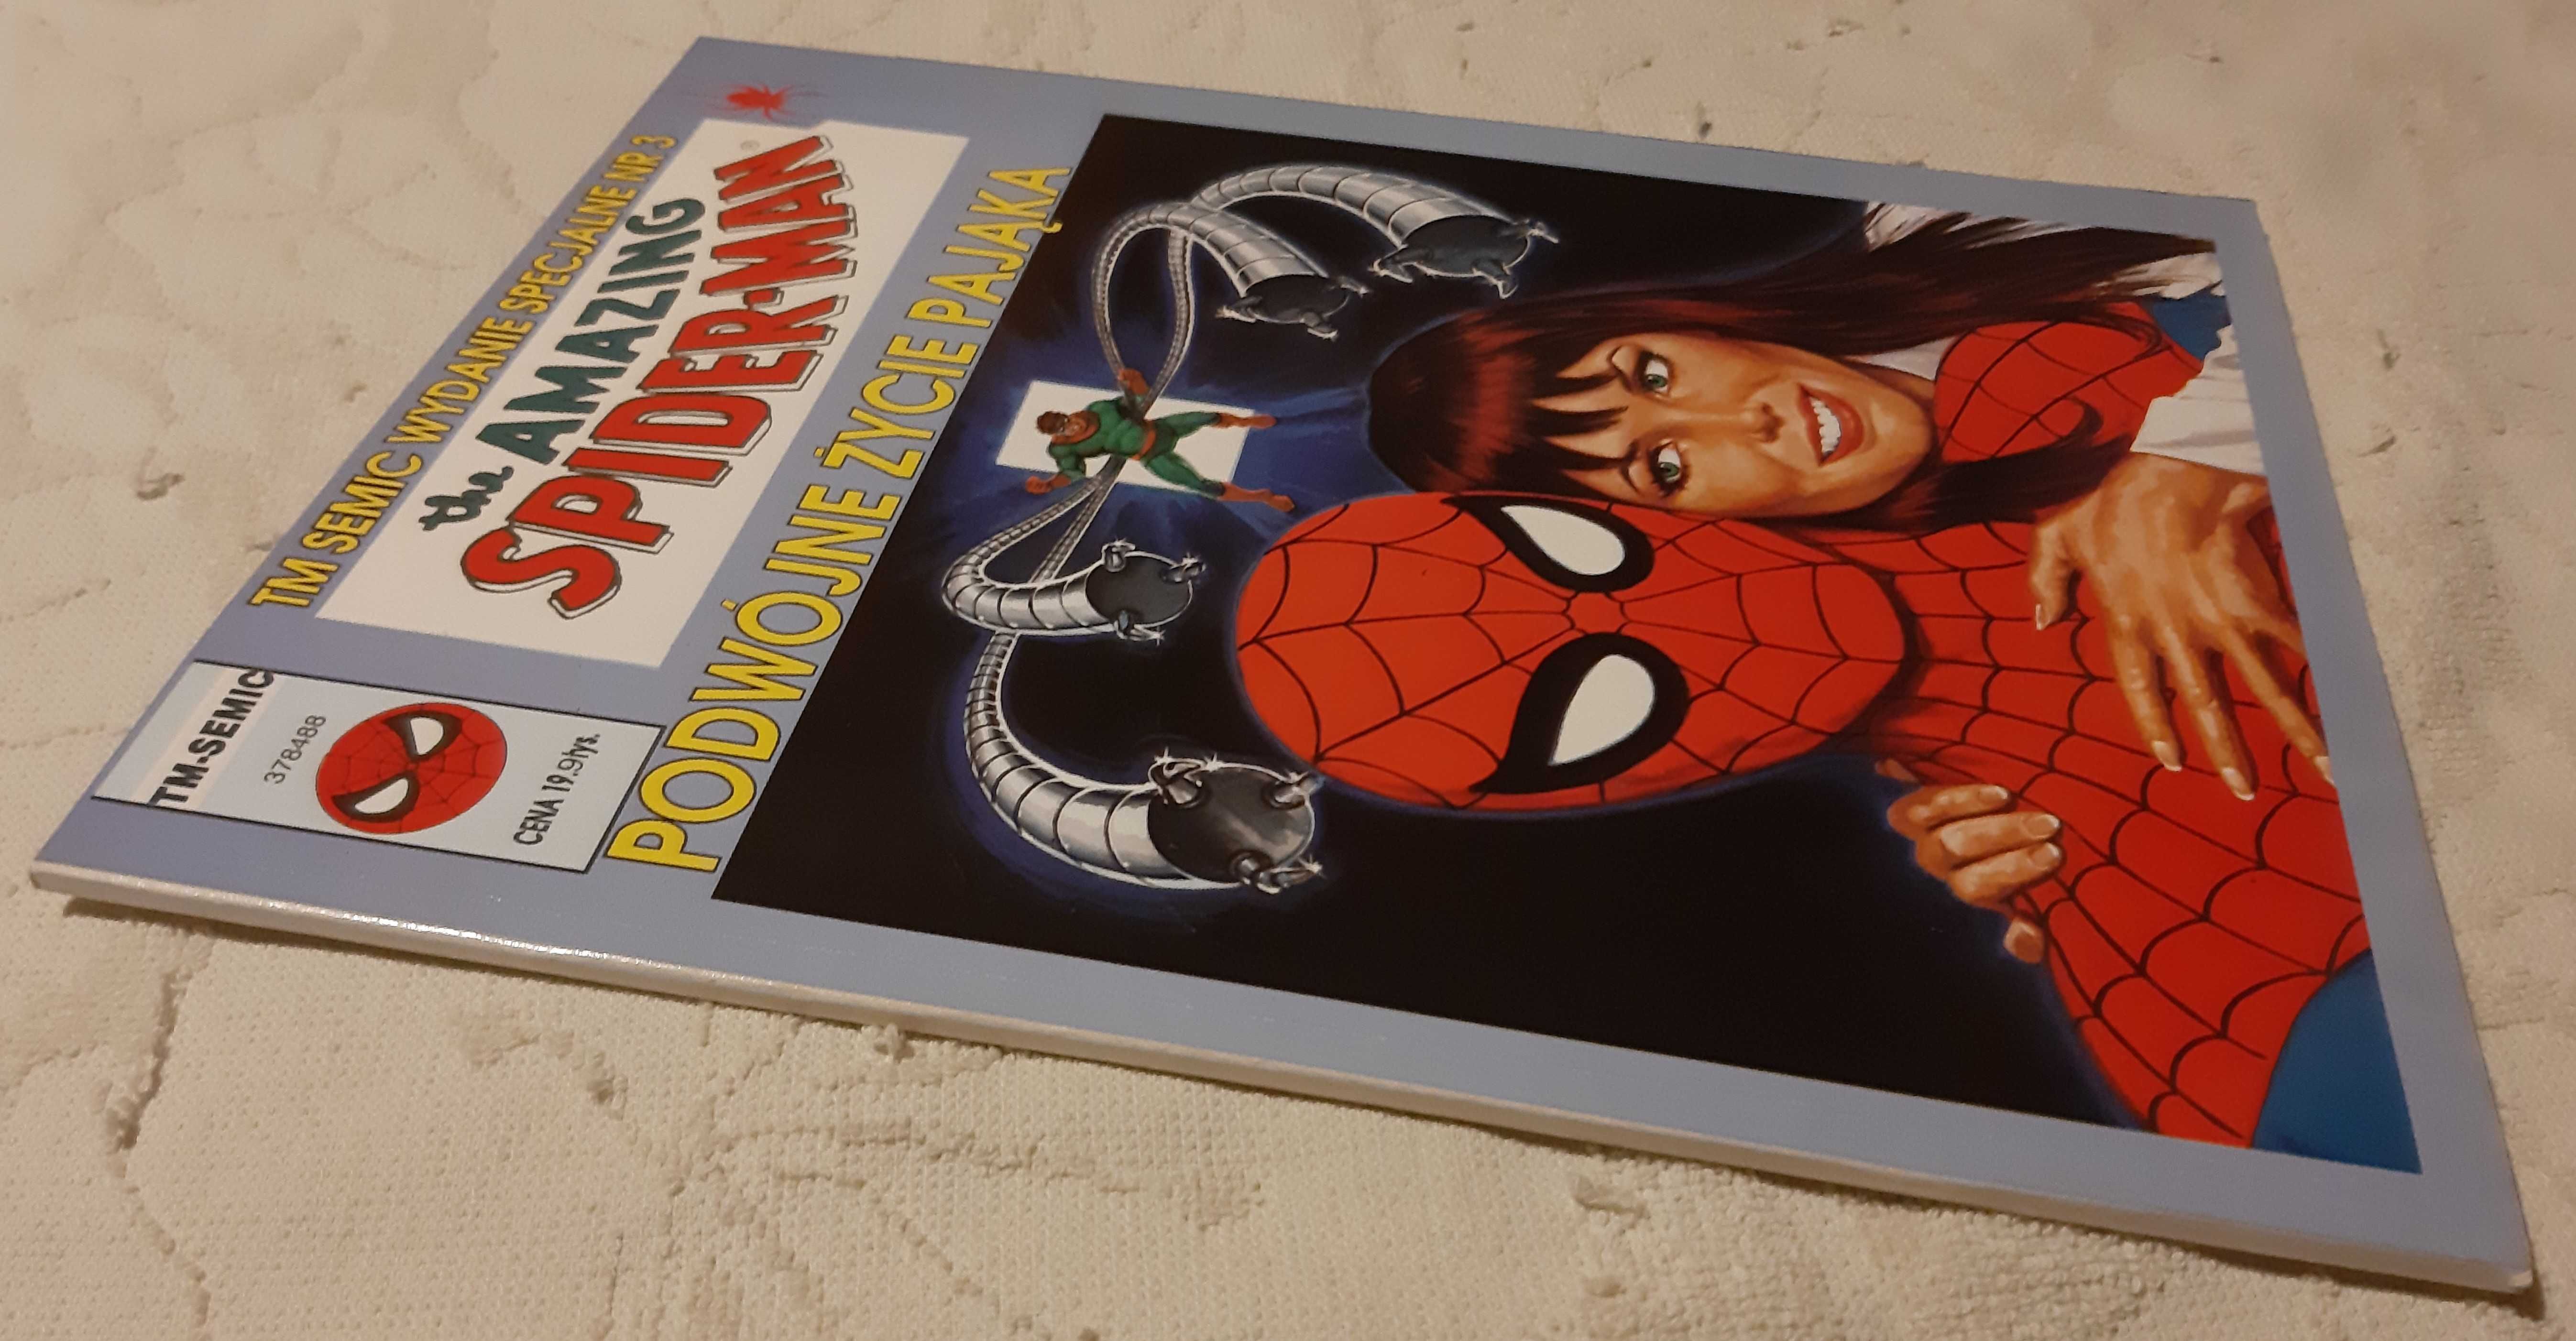 Amazing Spiderman - Podwójne życie pająka /TM-Semic/